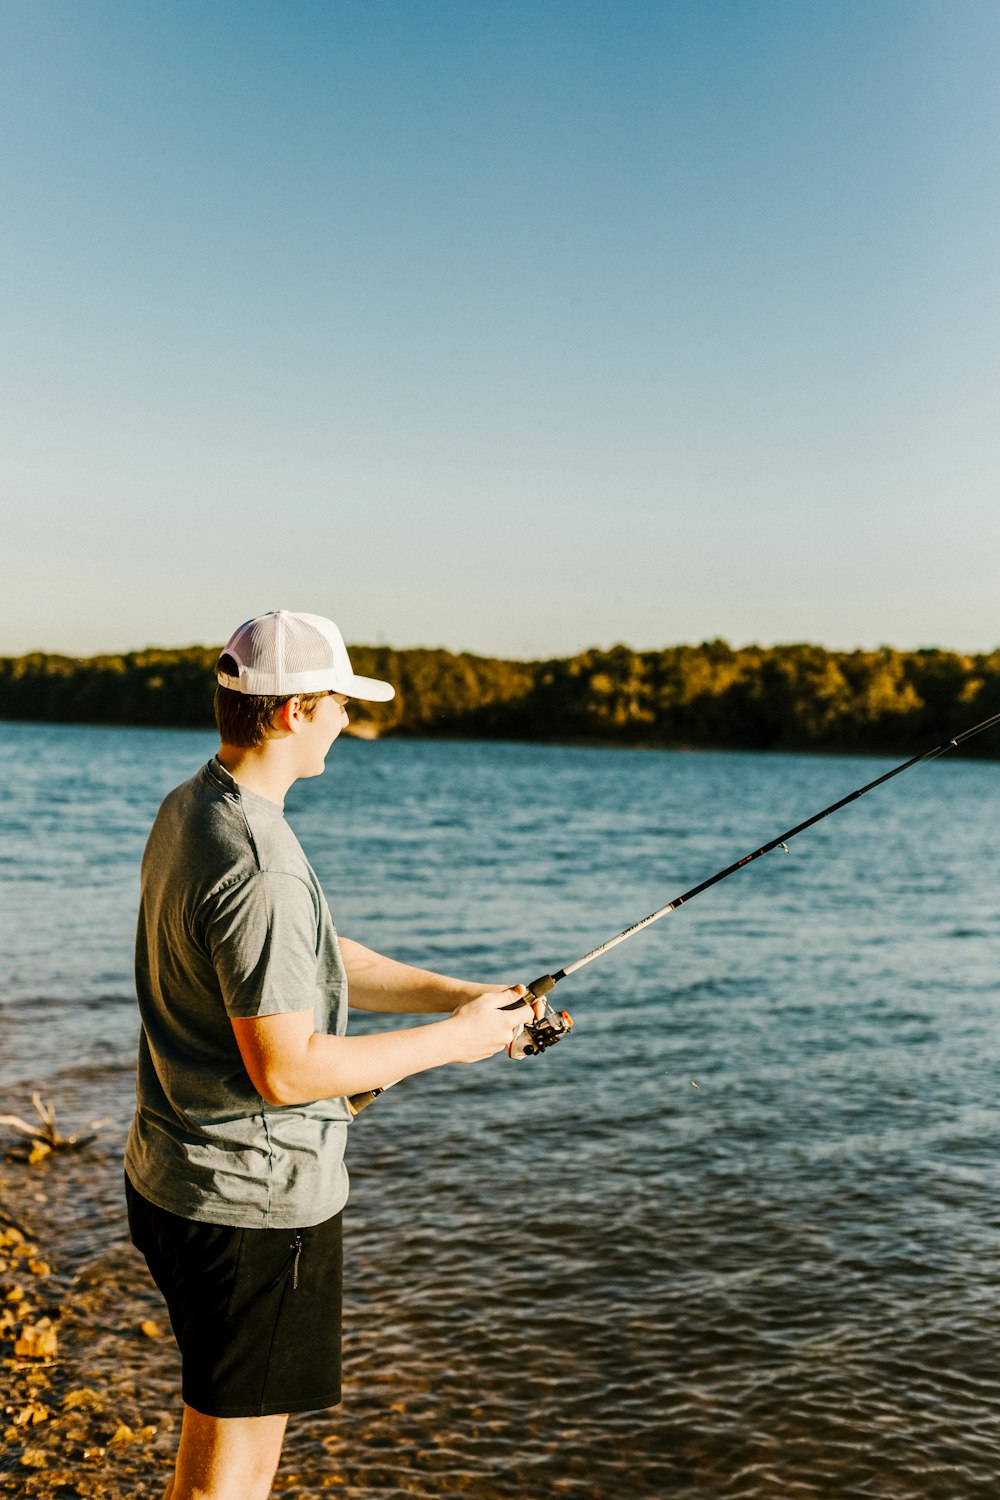 man in grey t-shirt fishing on lake during daytime